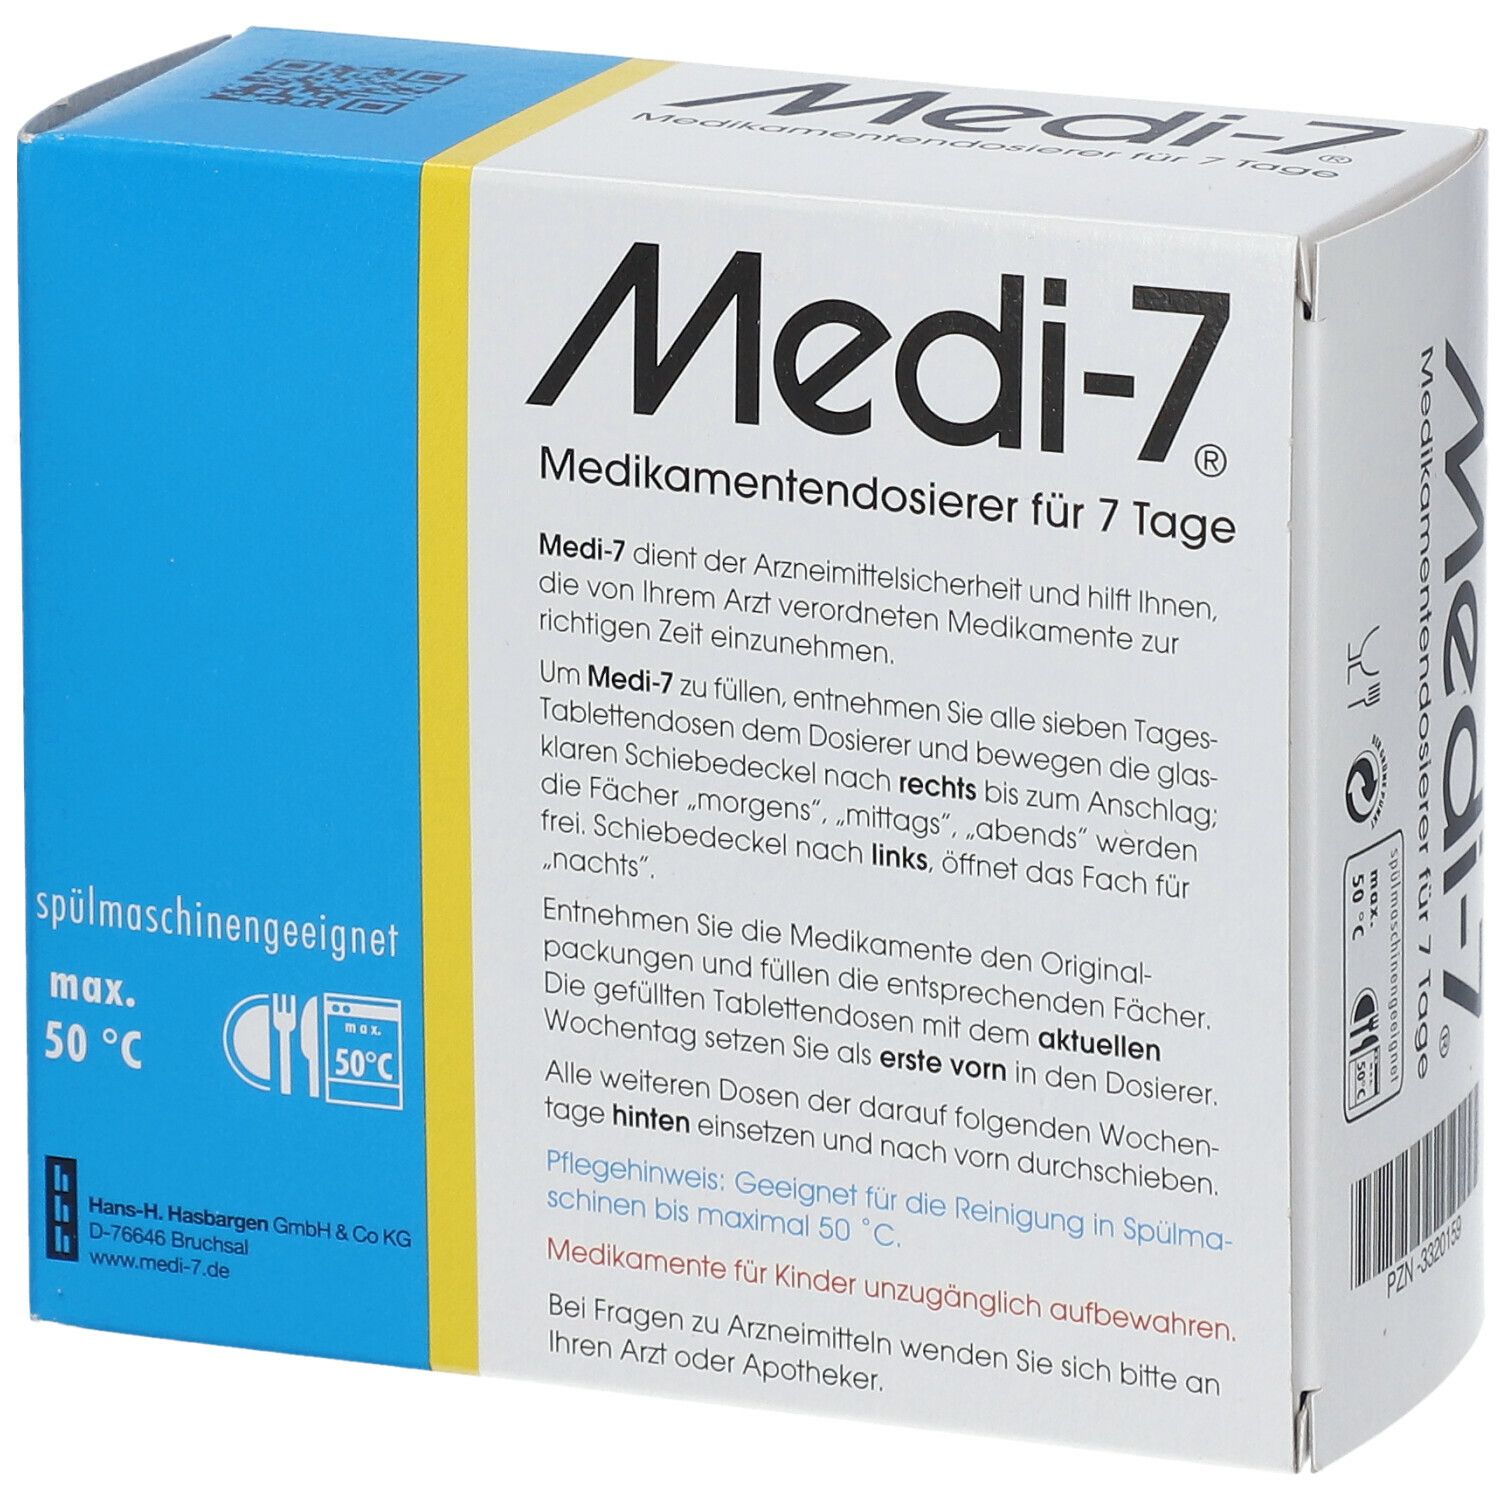 Medi-7 Medikamentendosierer für 7 Tage, blau